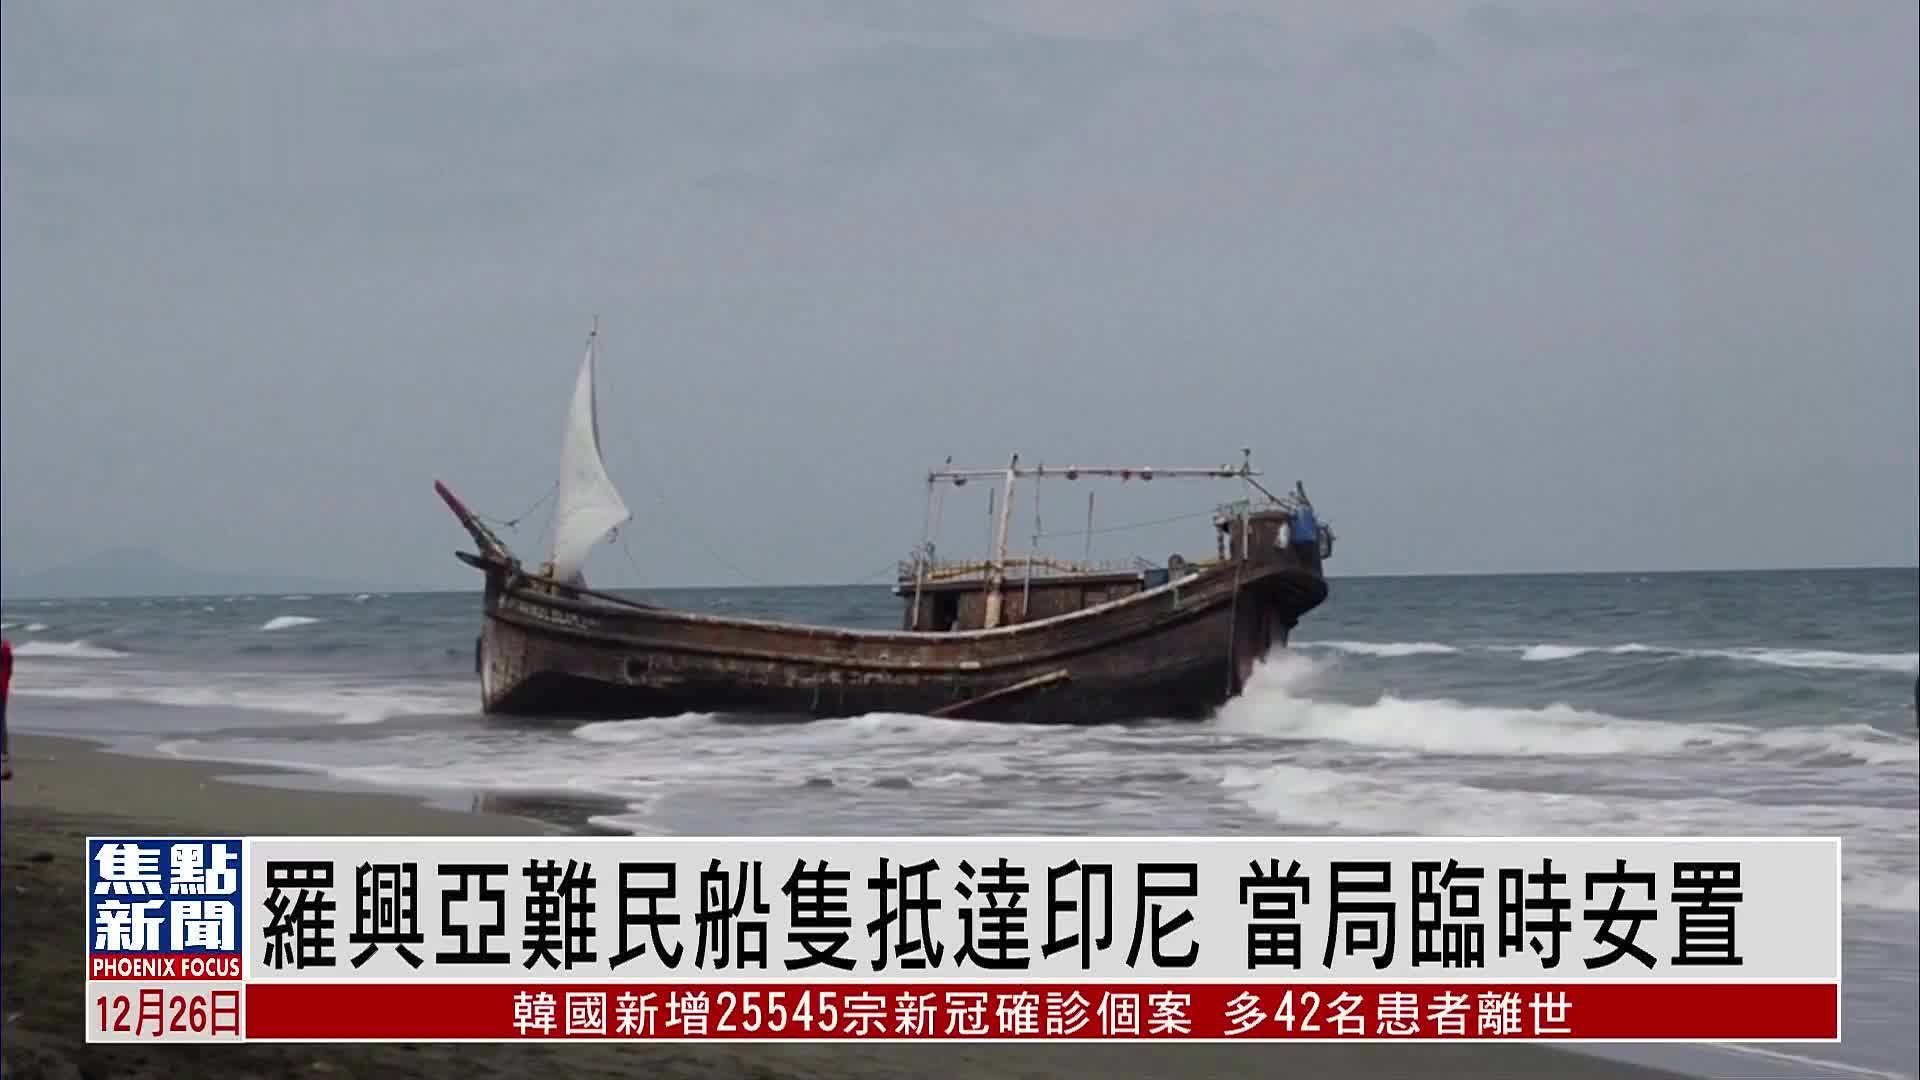 罗兴亚难民船只抵达印尼 当局临时安置